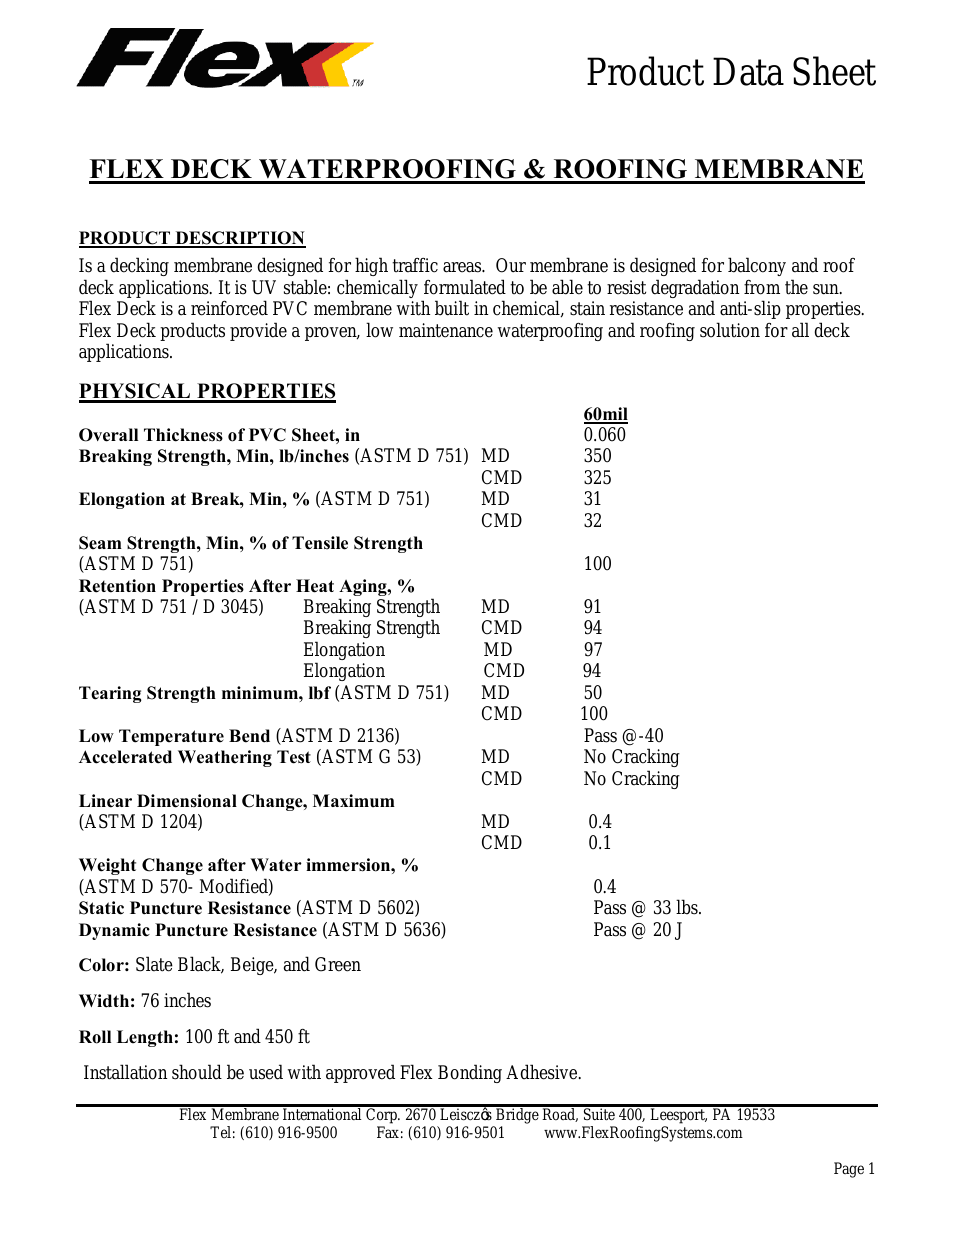 Deck Waterproofing-Roofing Membrane